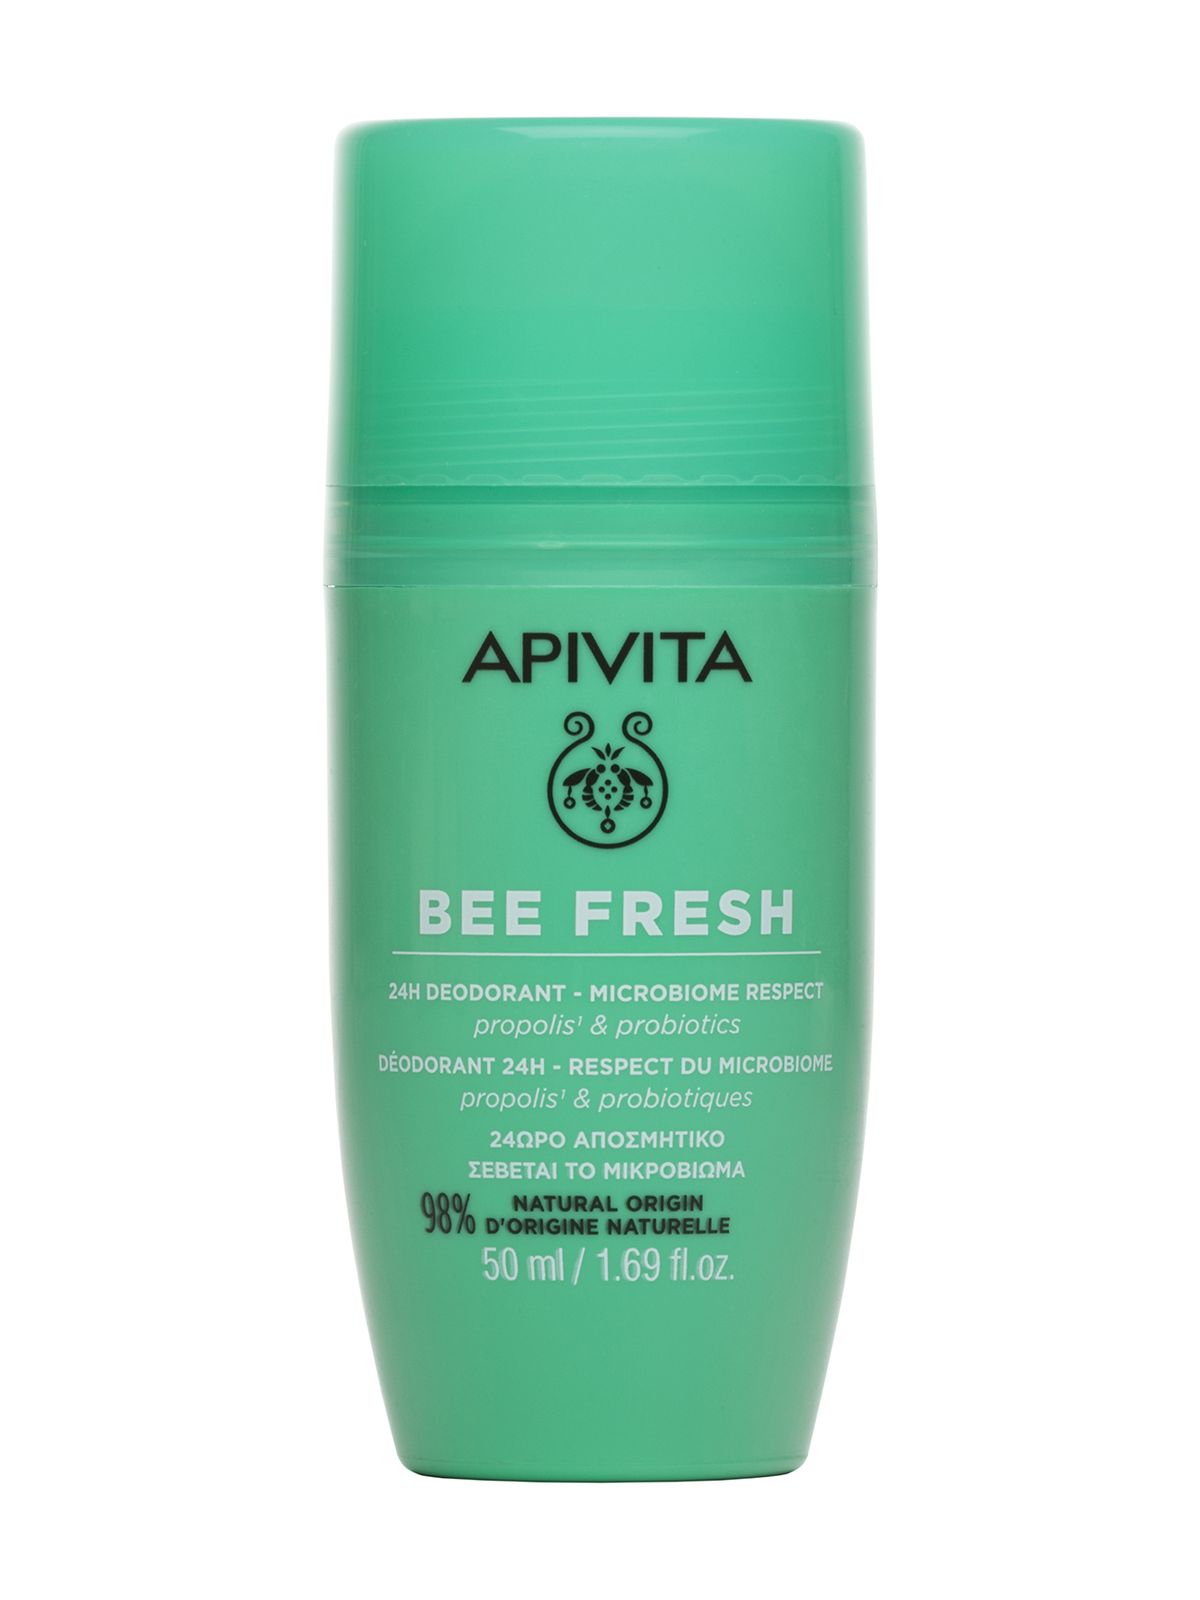 Дезодорант Apivita Bee Fresh 24H Deodorant Microbiome Respect Propolis & Probiotics дезодорант порошковый grace deodorant powder fresh свежесть 35 г